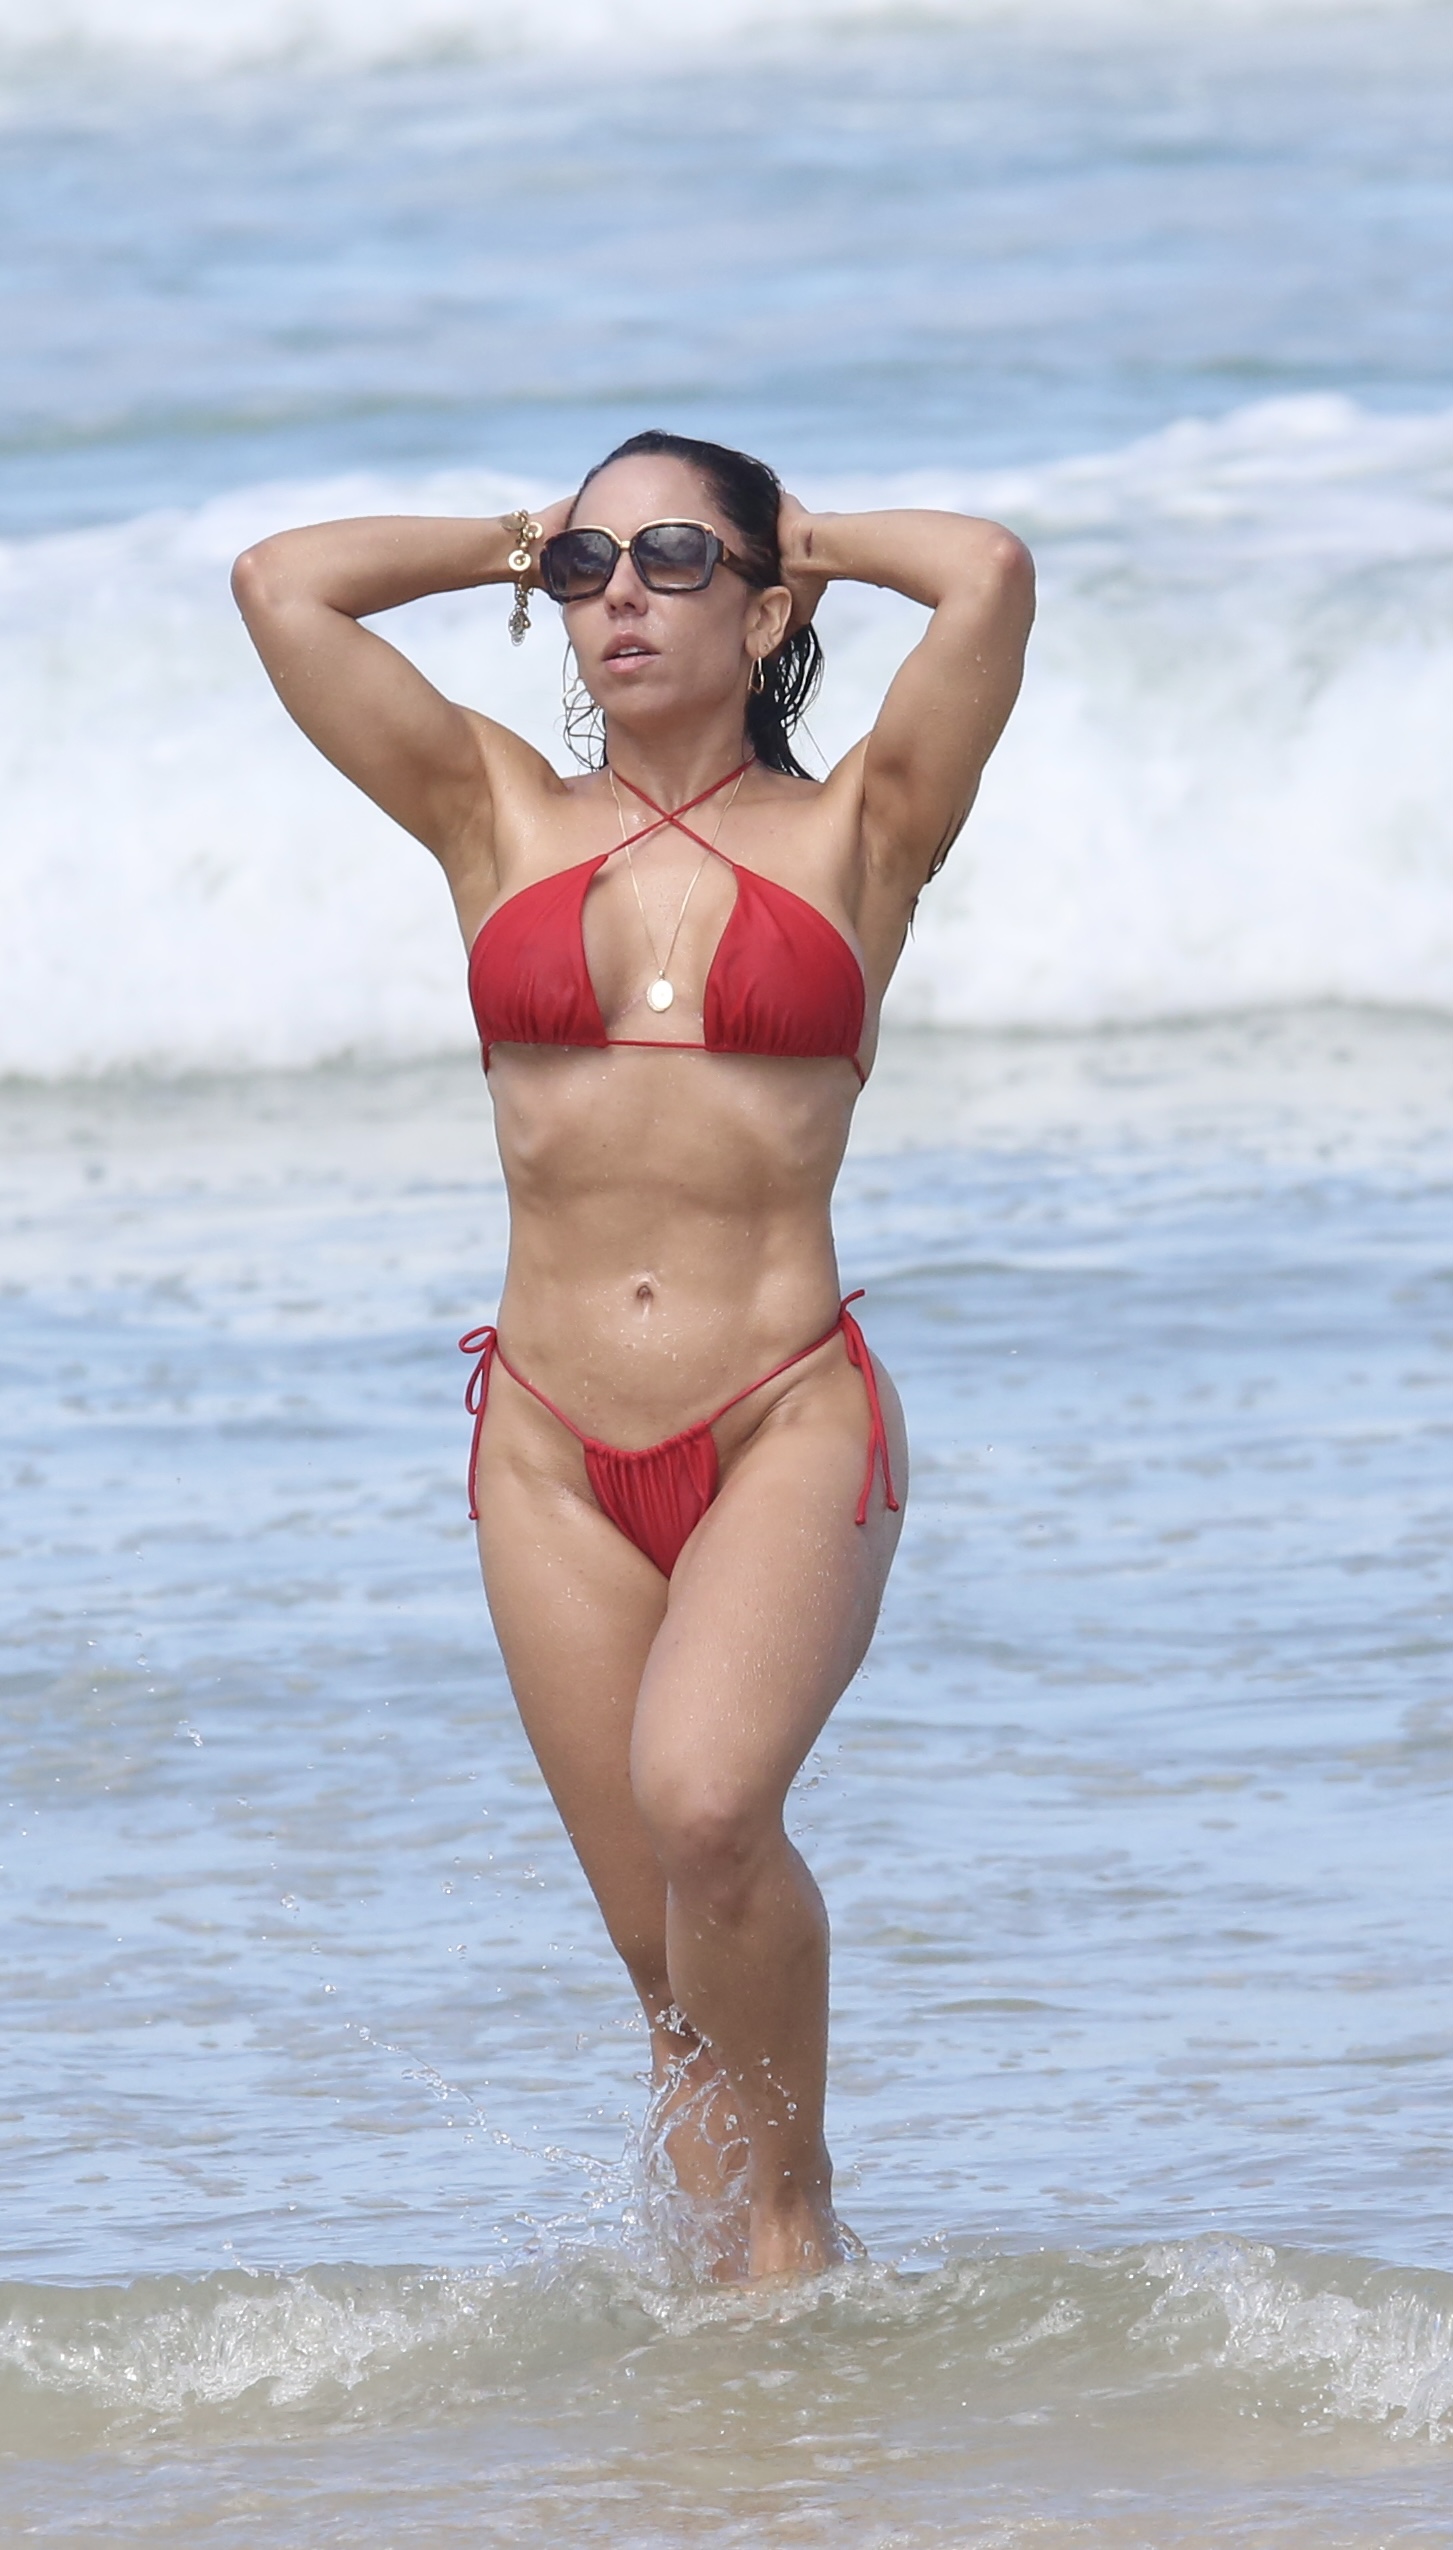 Mulher Melão é flagrada em dia na praia